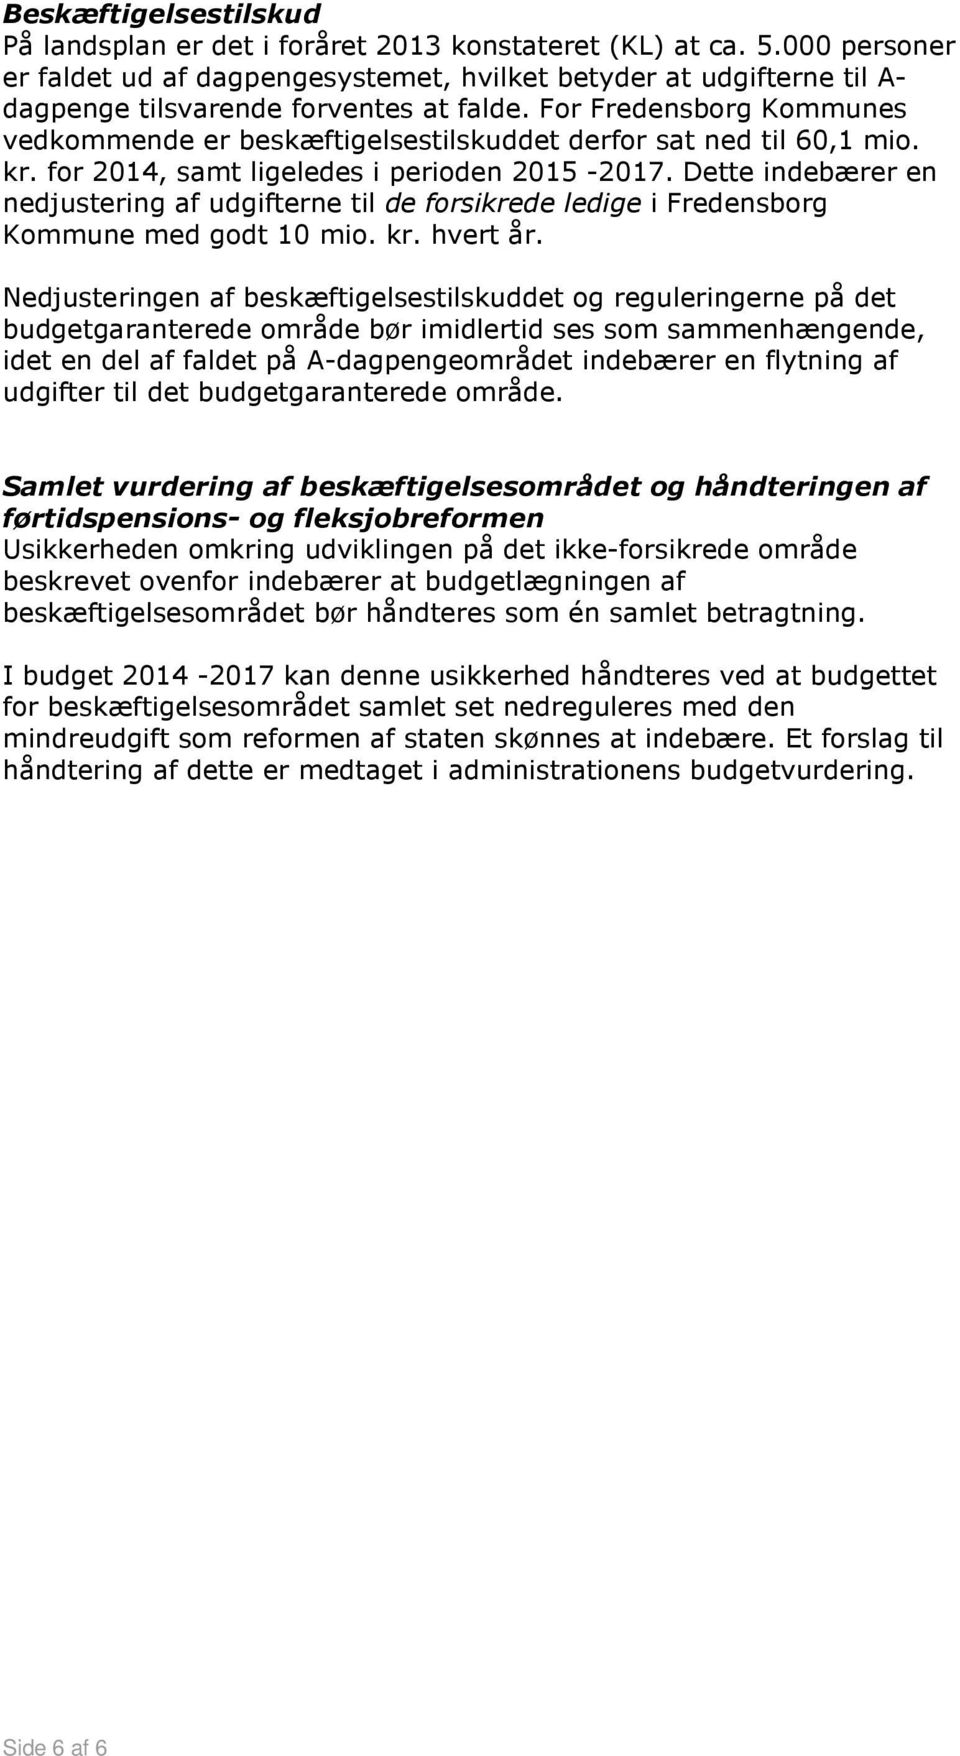 For Fredensborg Kommunes vedkommende er beskæftigelsestilskuddet derfor sat ned til 60,1 mio. kr. for 2014, samt ligeledes i perioden 2015-2017.